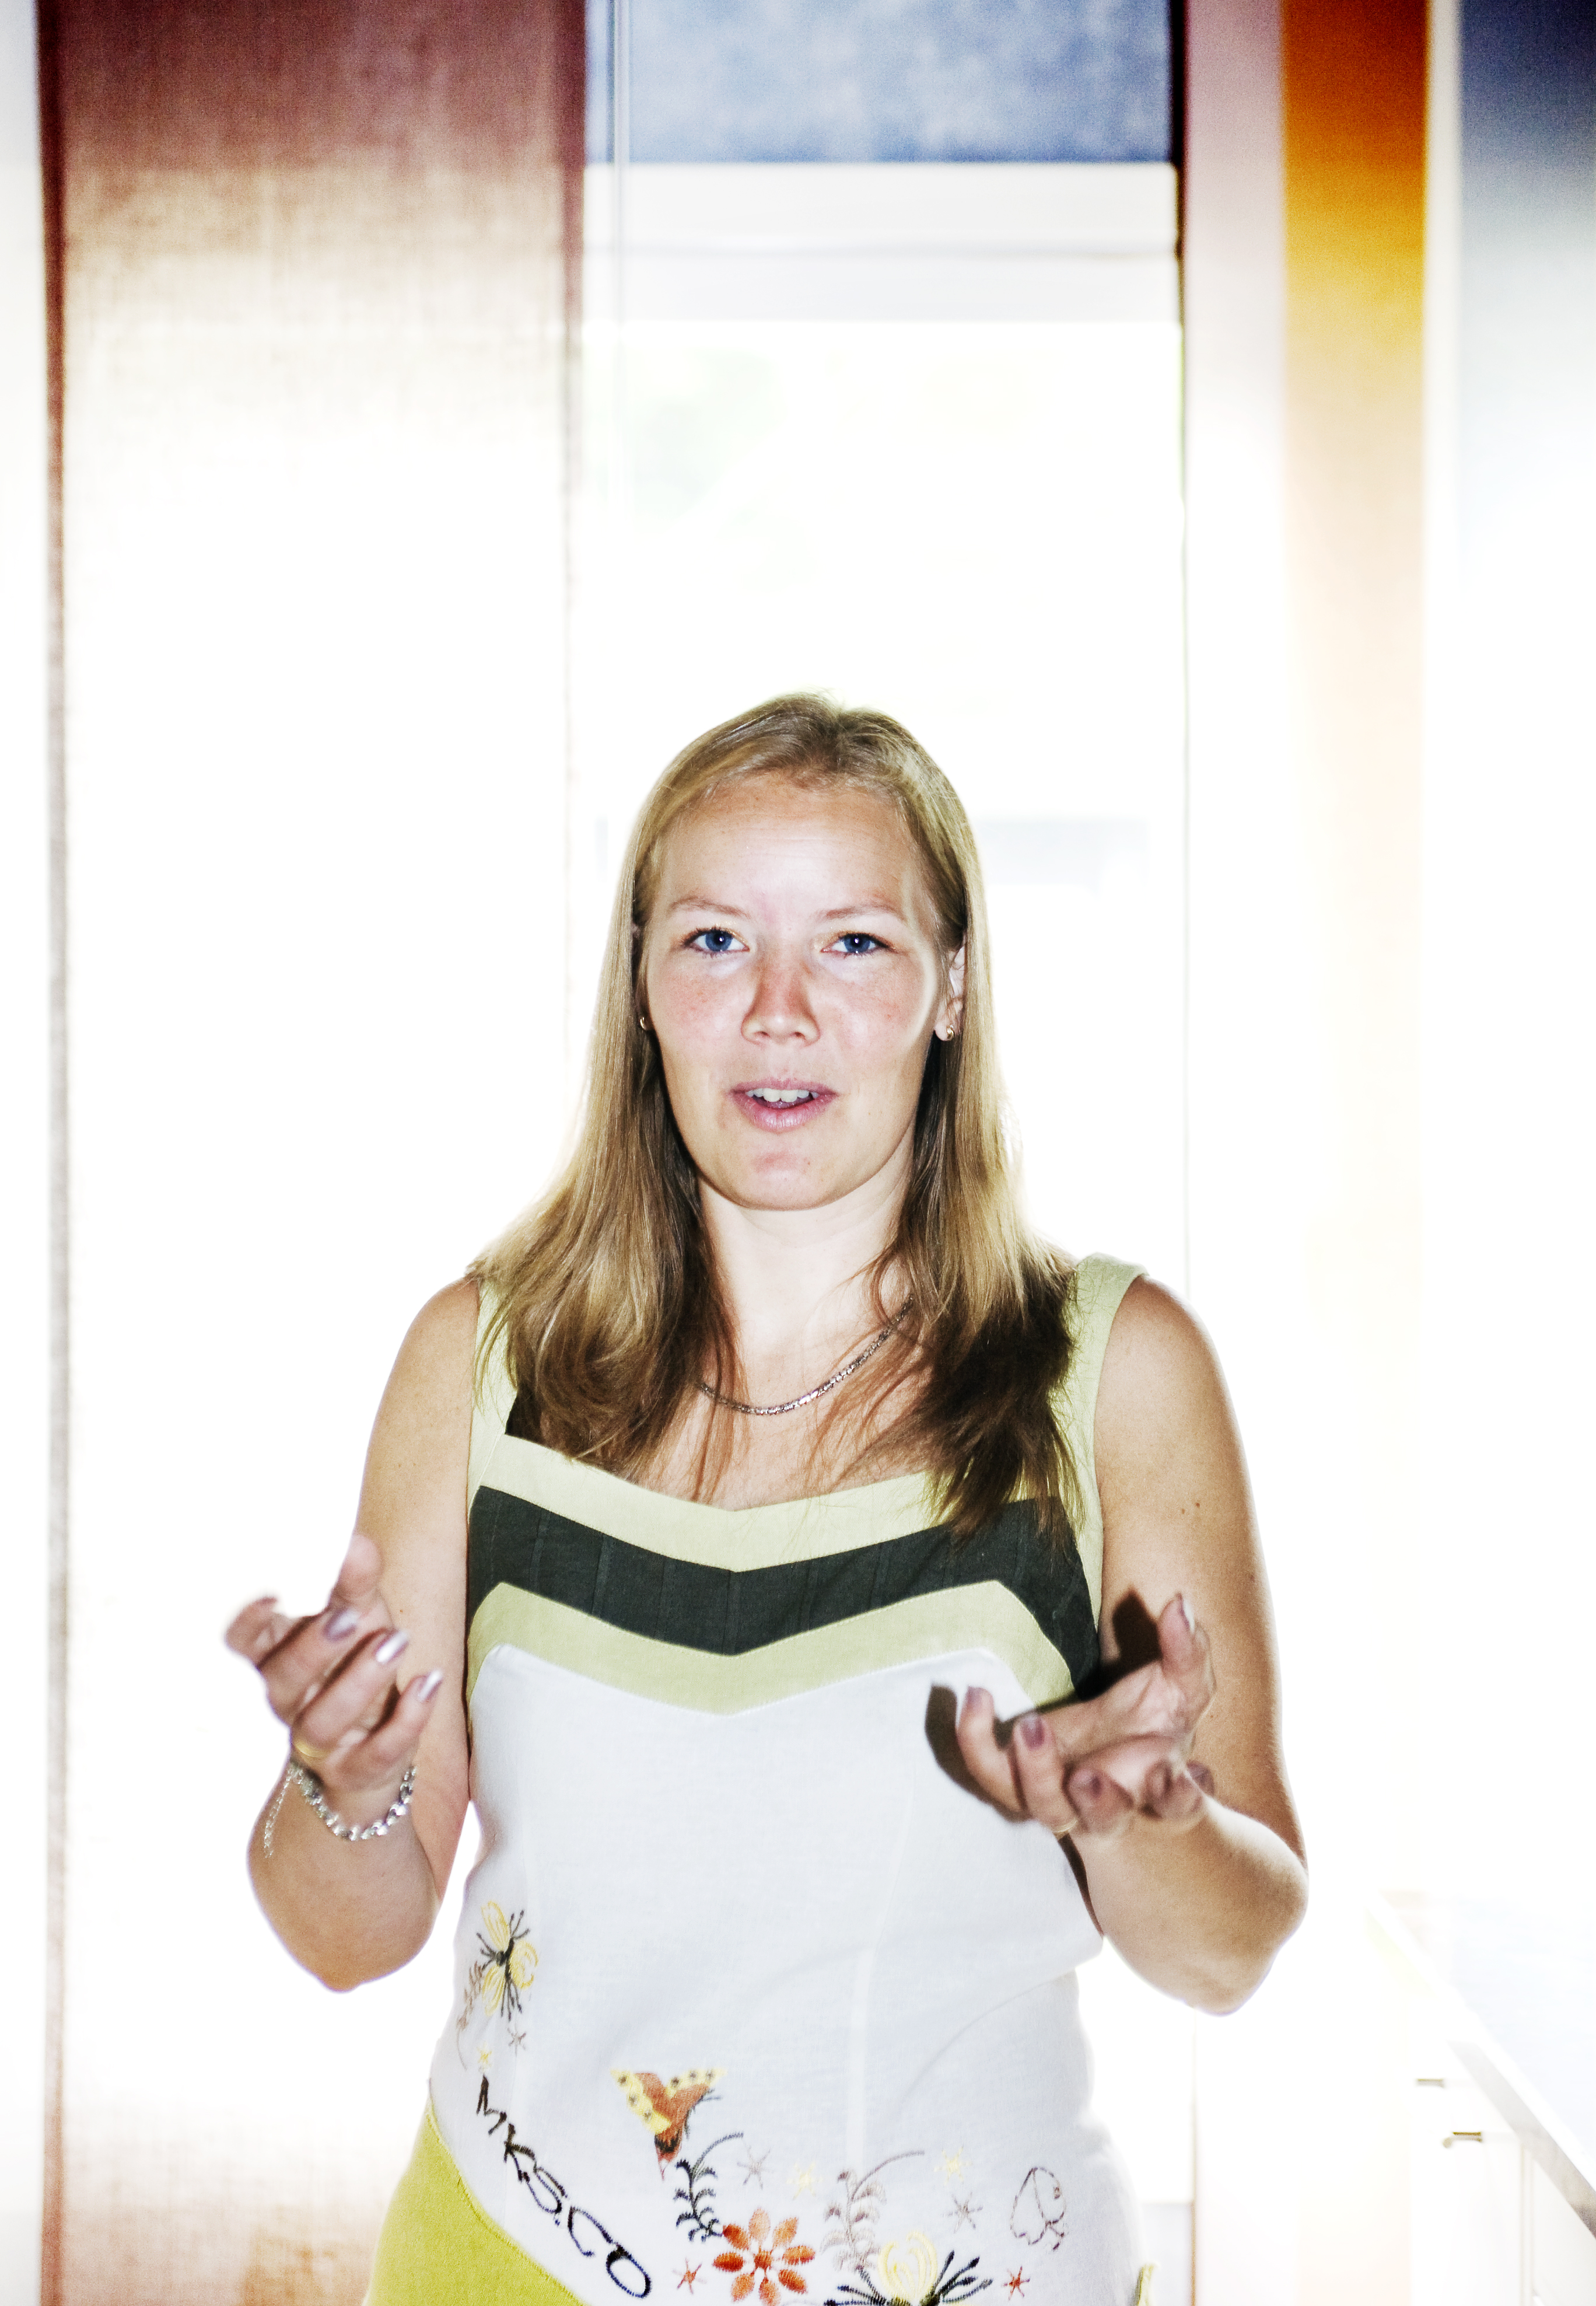 Emma Henriksson, KD:s gruppledare, låter uppgiven när hon talar om chanserna att påverka Moderaterna.